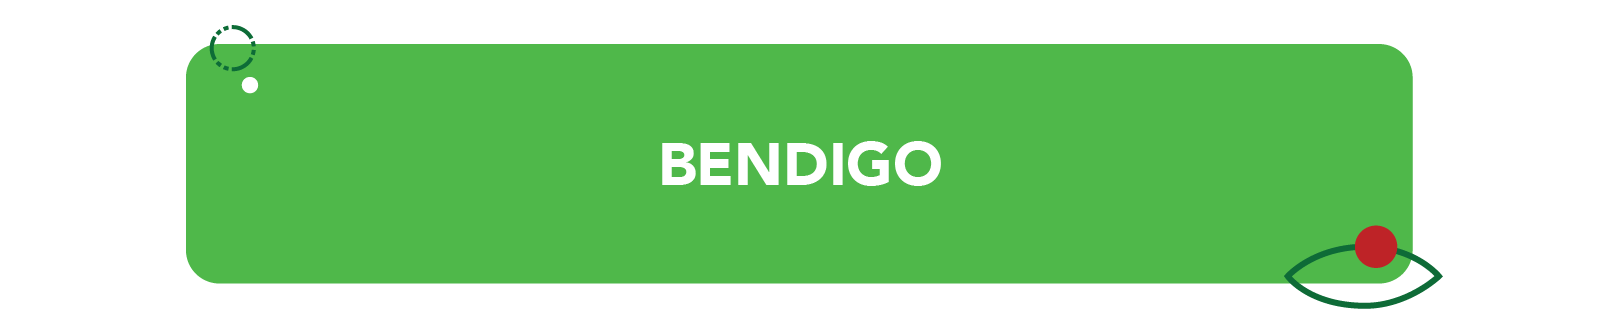 Bendigo advance turf icon